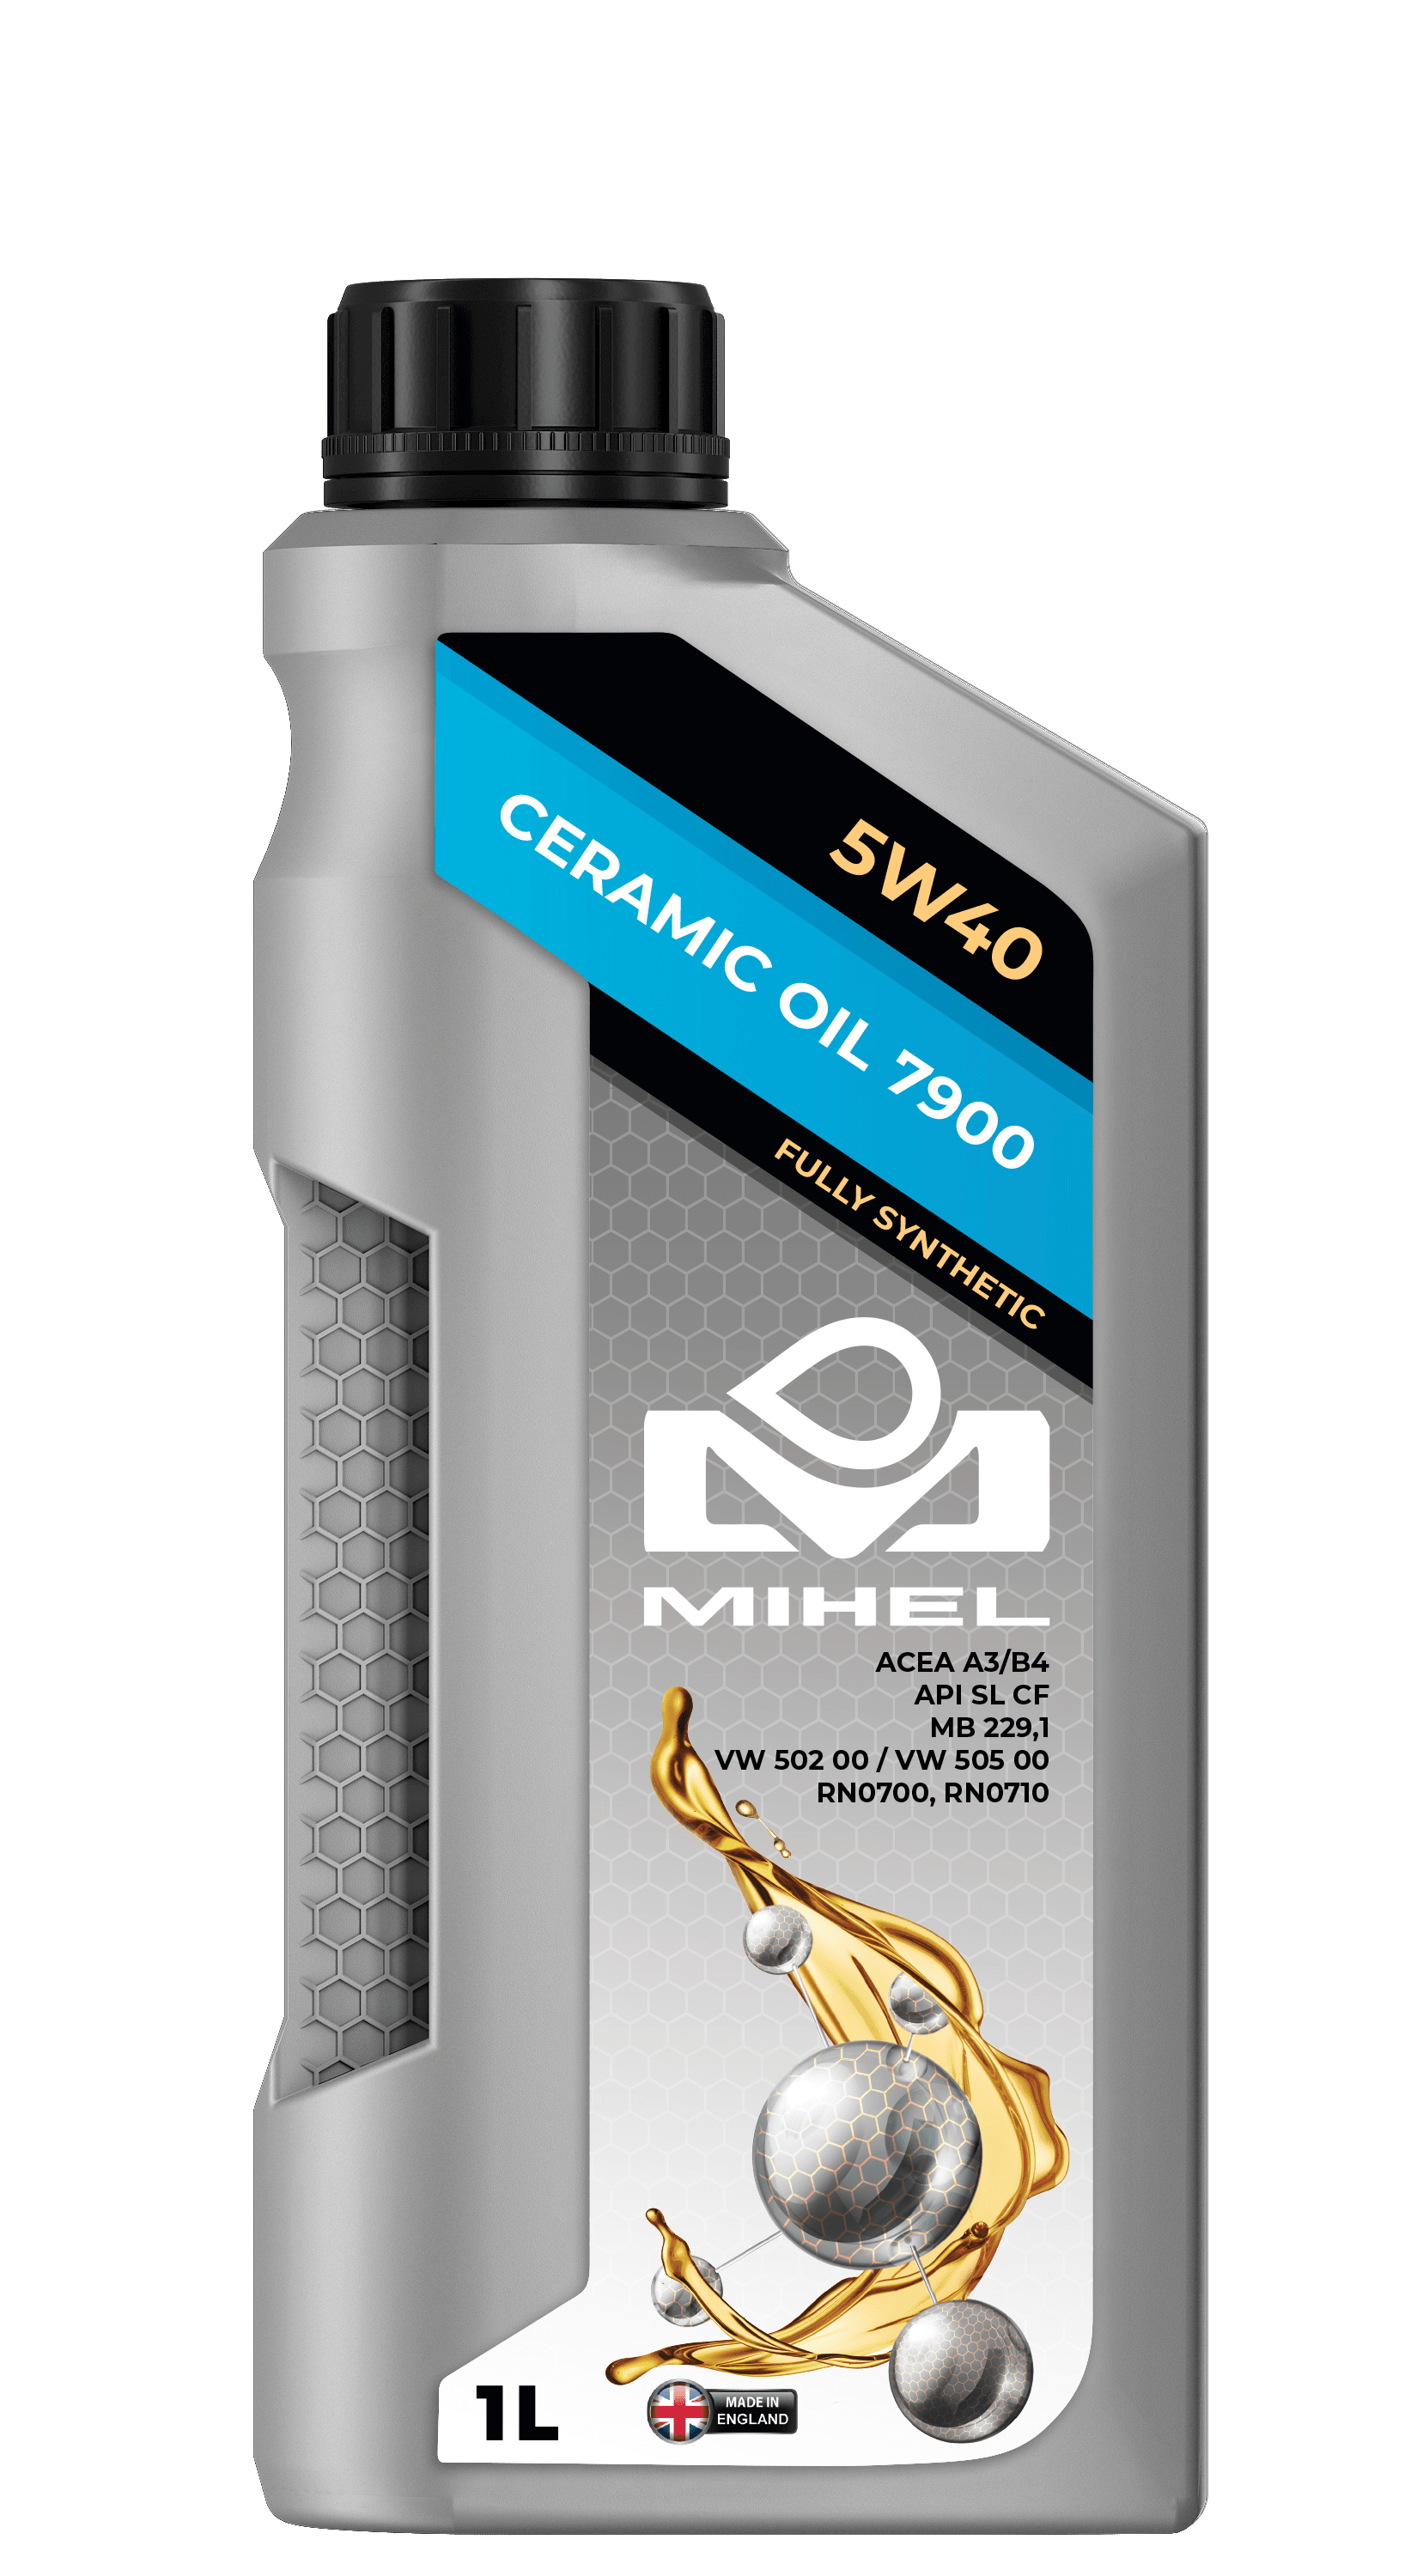 MIHEL Ceramic Oil® 7900 5W40